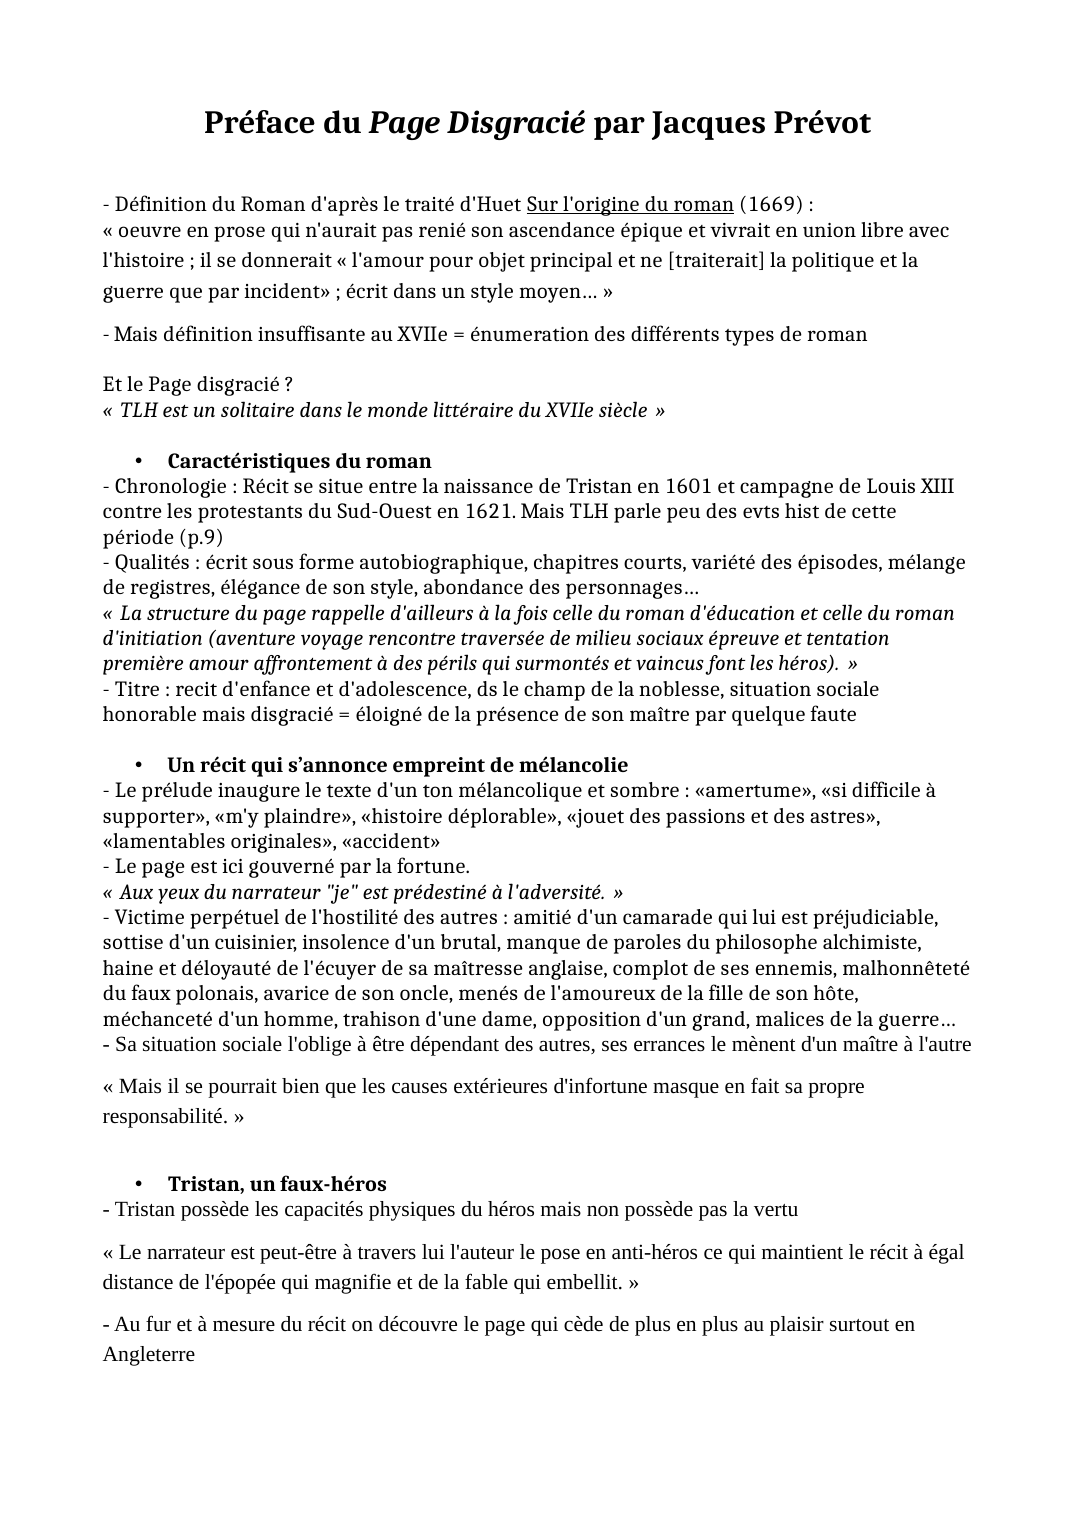 Prévisualisation du document Résumé de la préface du Page disgracié par Jacques Prévot